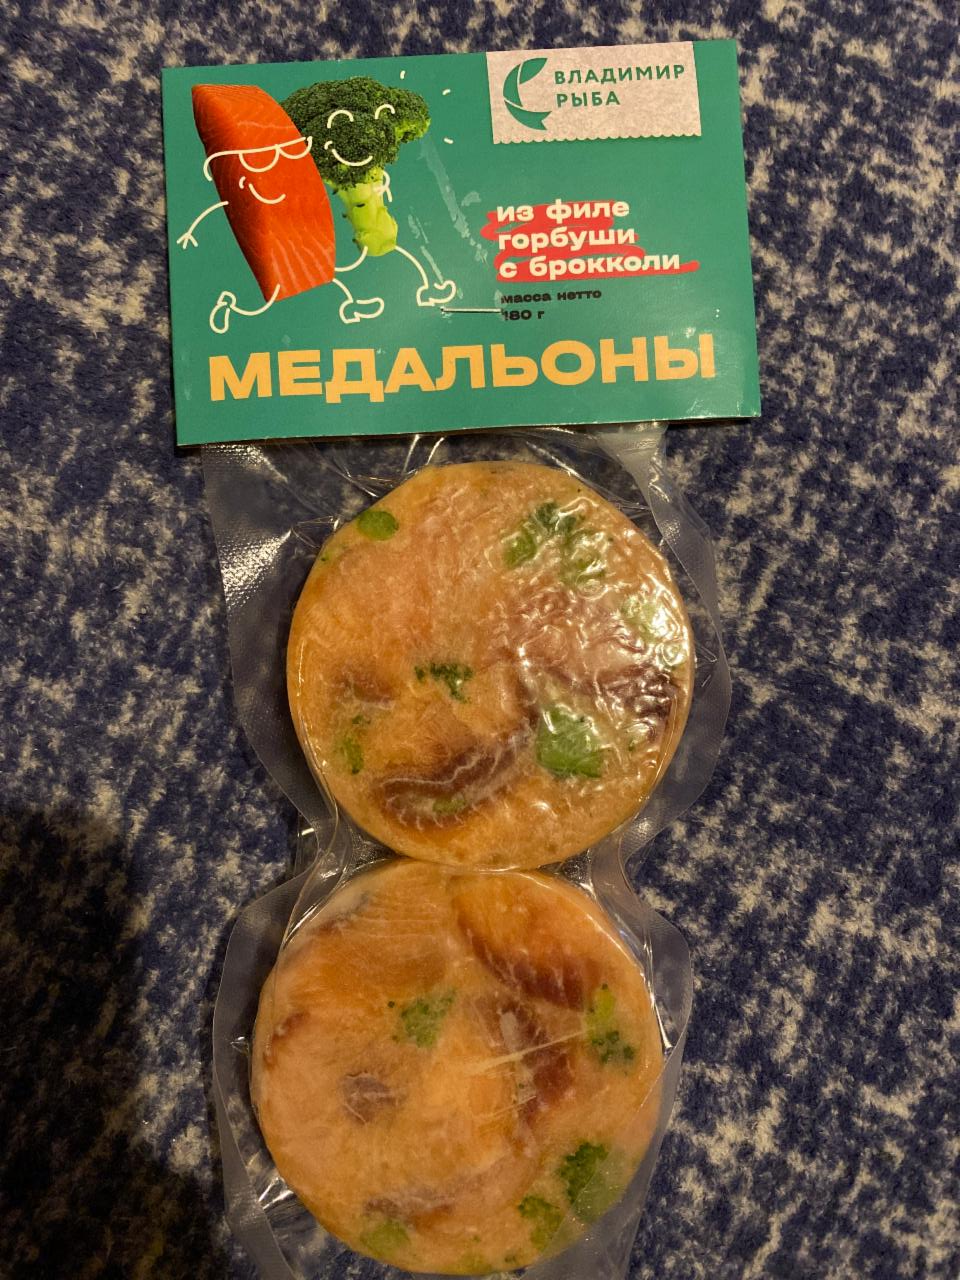 Фото - Медальоны из горбуши с брокколи Владимир рыба